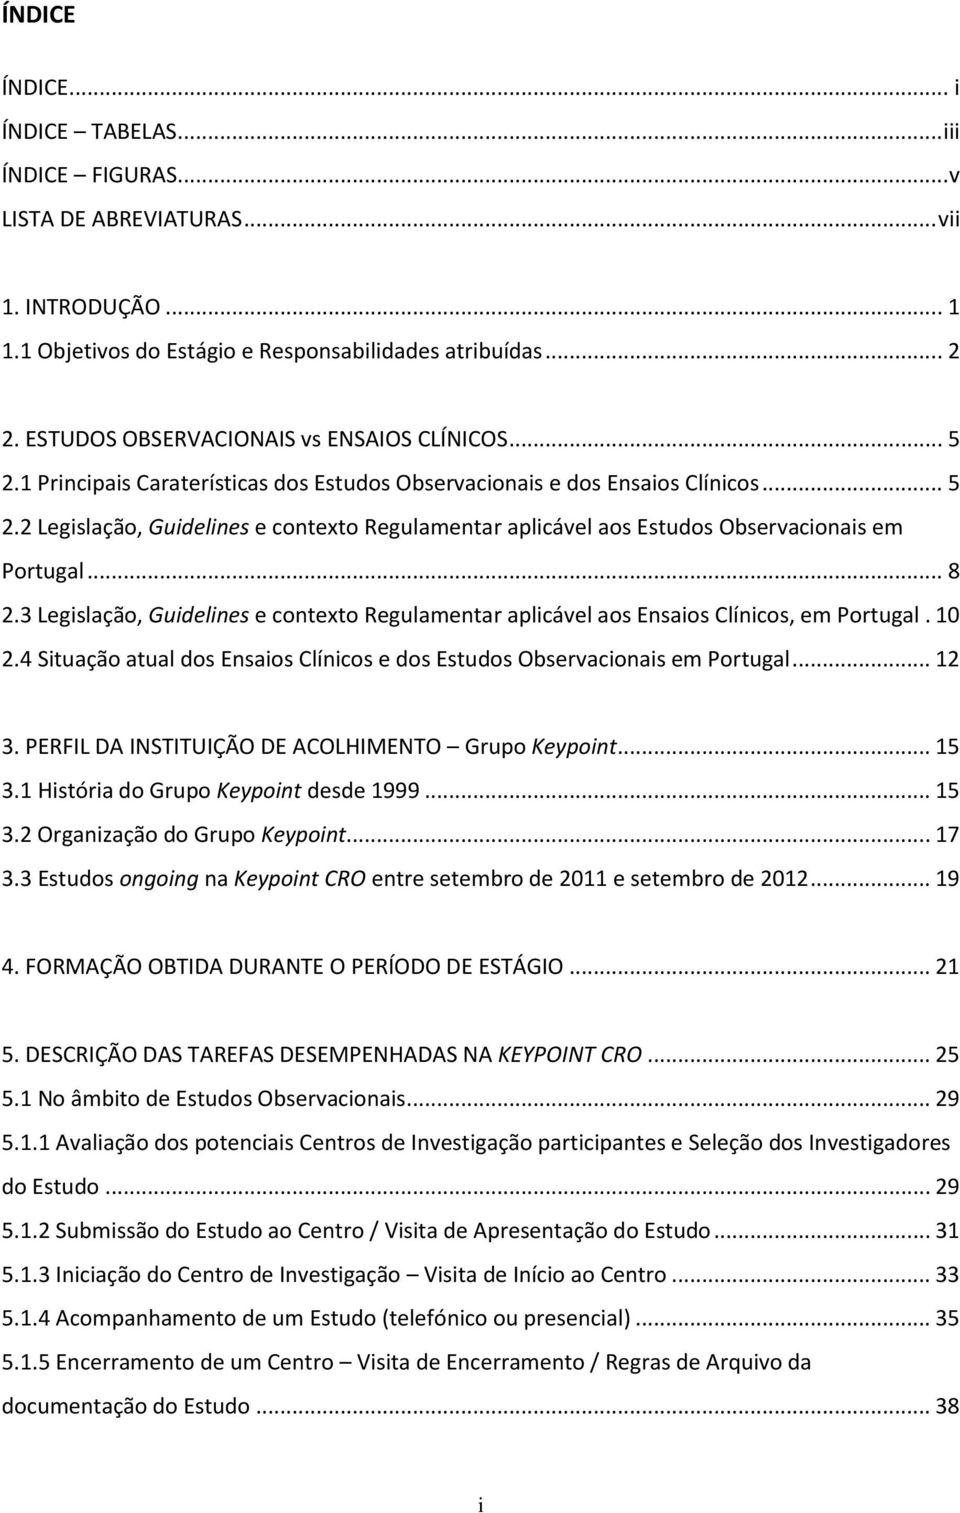 .. 8 2.3 Legislação, Guidelines e contexto Regulamentar aplicável aos Ensaios Clínicos, em Portugal. 10 2.4 Situação atual dos Ensaios Clínicos e dos Estudos Observacionais em Portugal... 12 3.